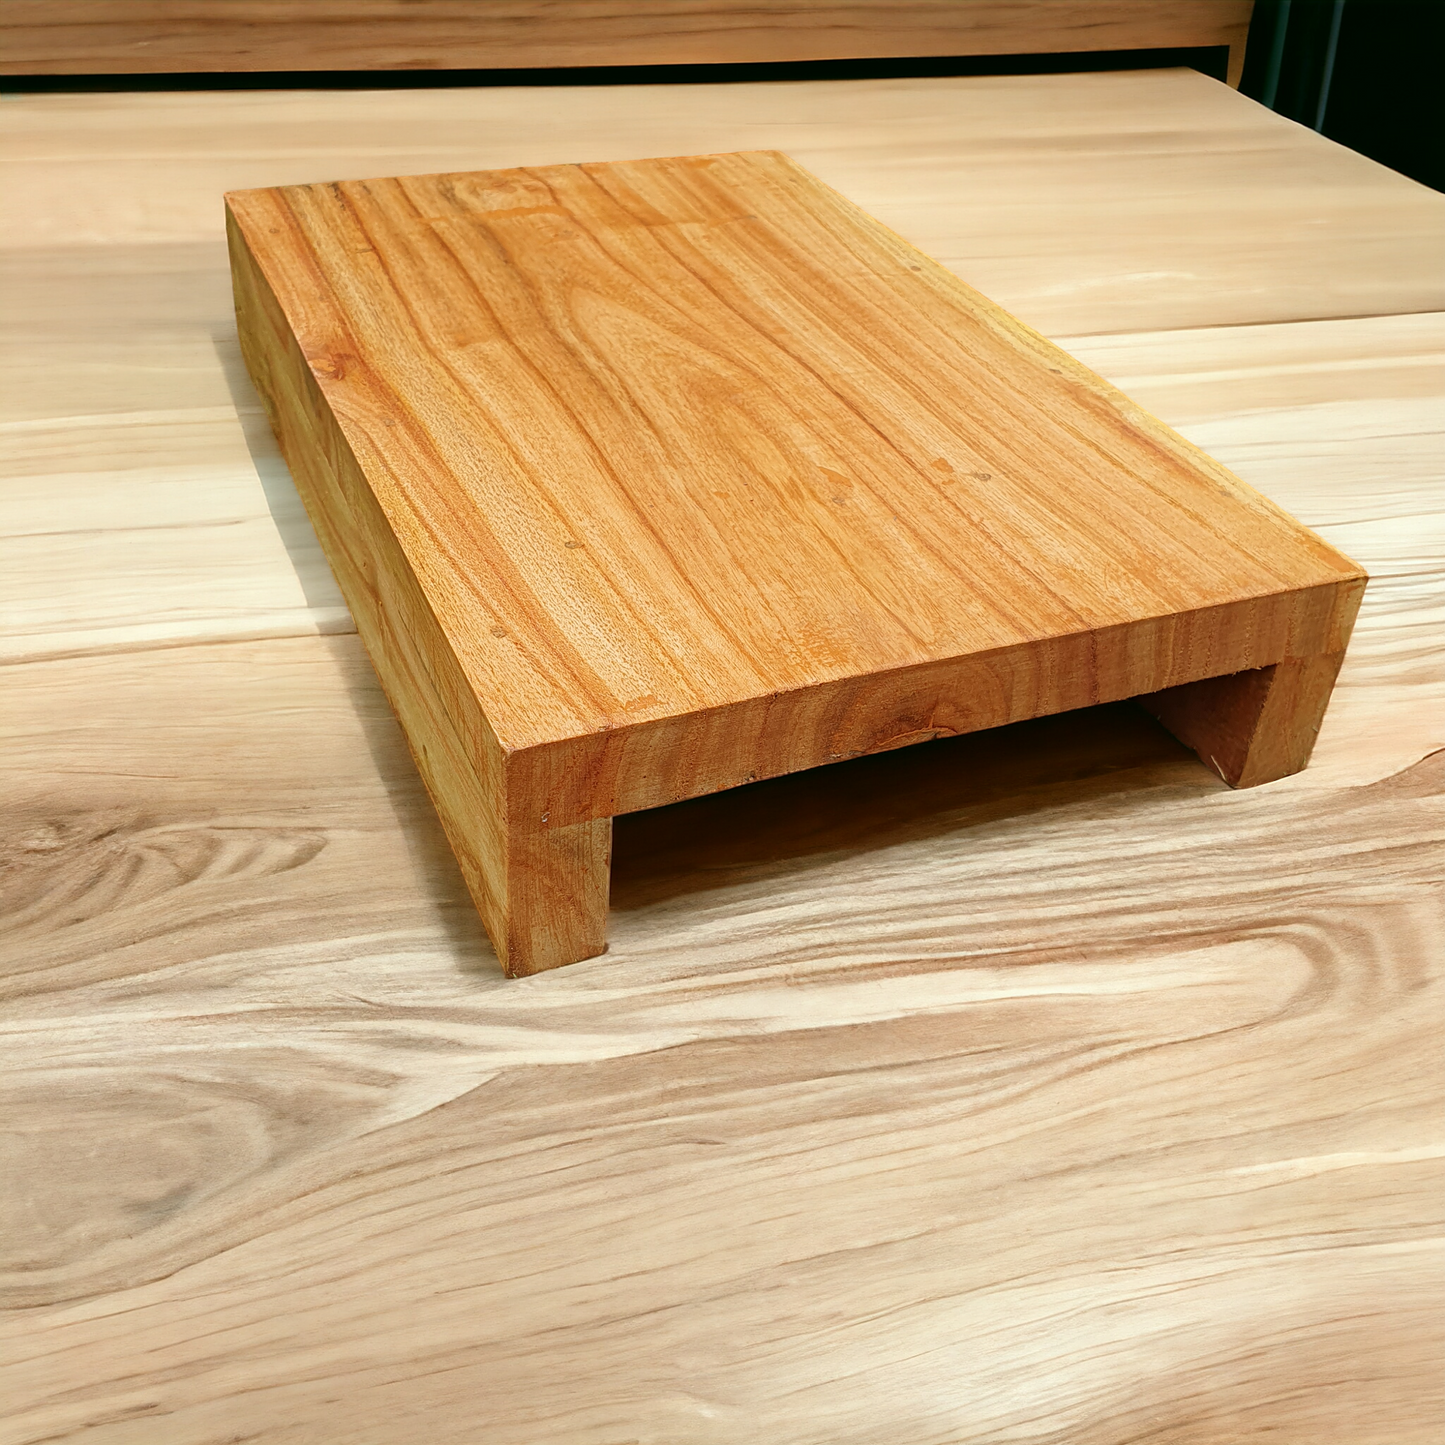 Wooden Board Cutting